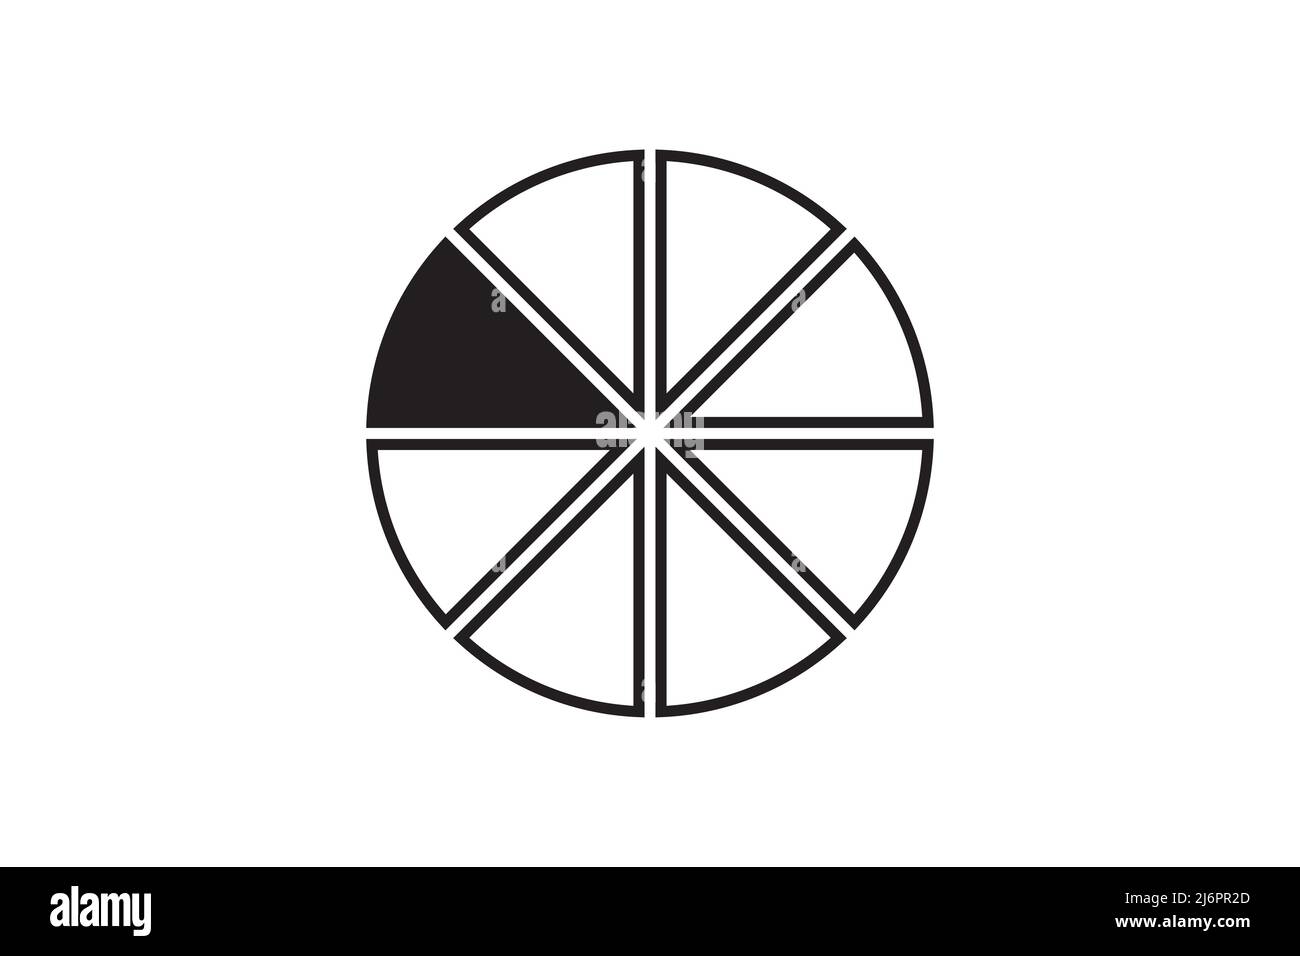 Vektorelement für runde Grafikfraktion mit Kreisform. Symbol für den Abschnitt „geometrisches Diagramm“. Diagramm teilen Rad. Stock Vektor